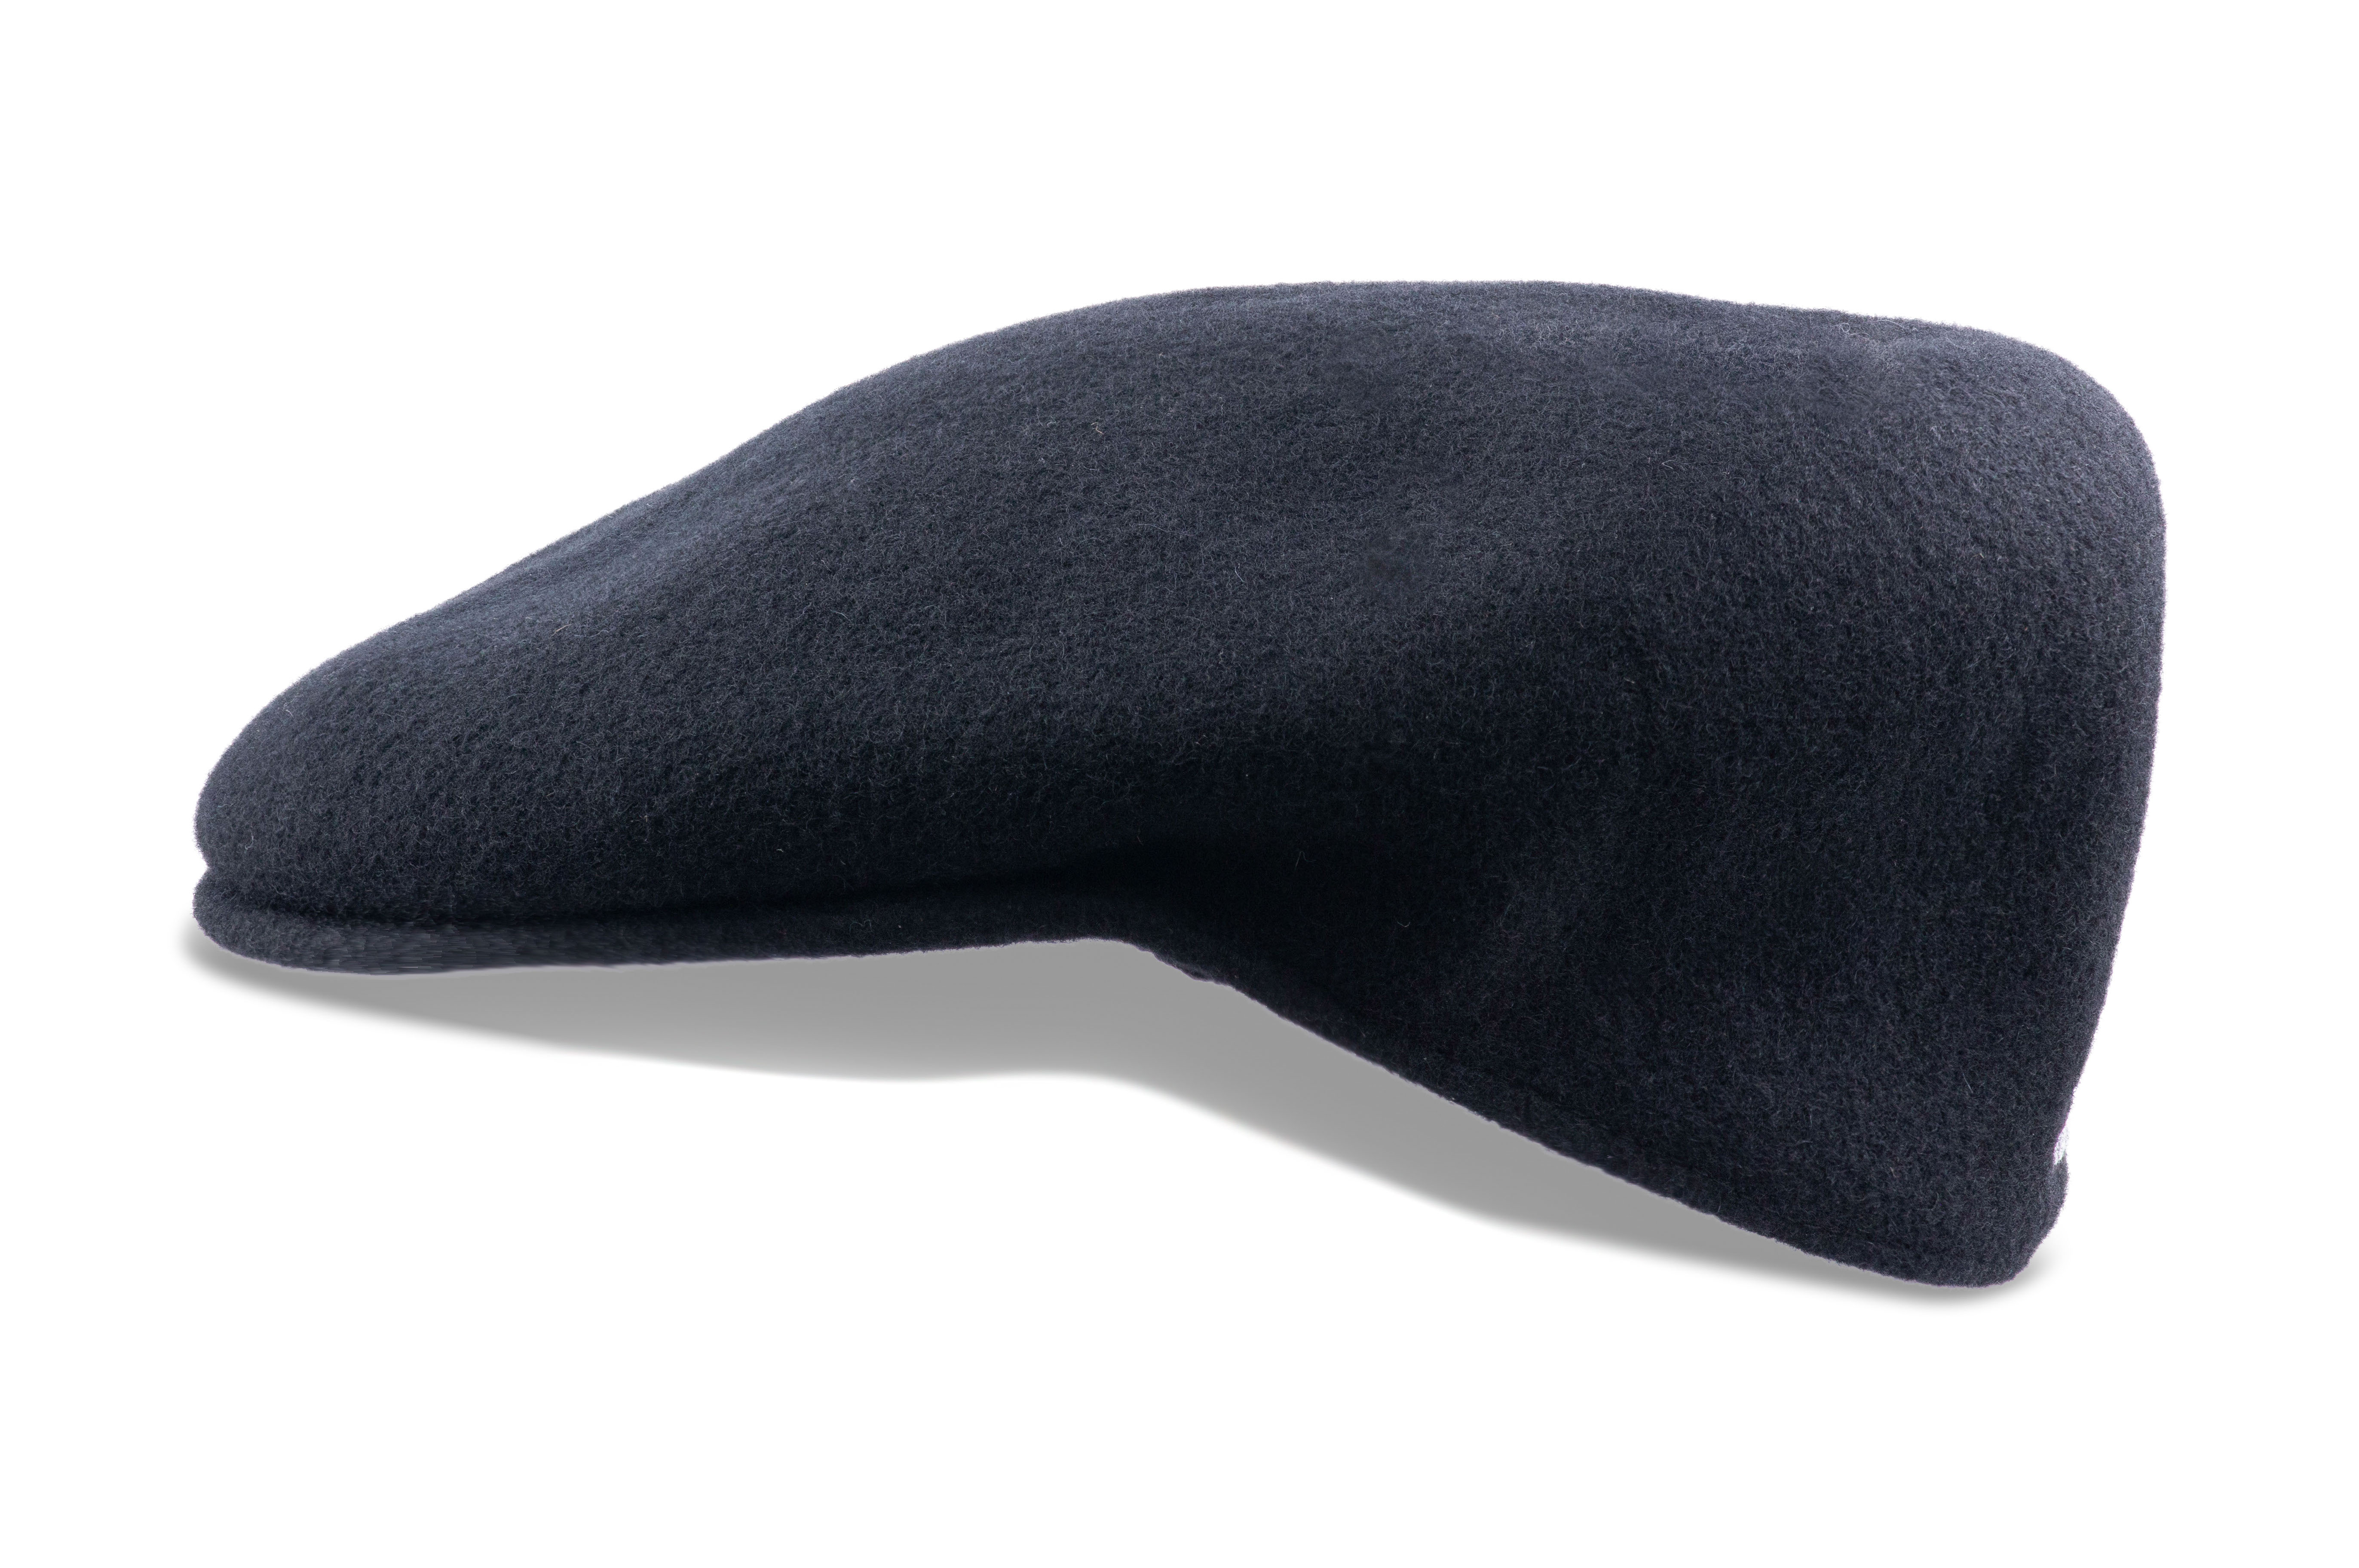 Kangol 504 Wool Felt Hat for Men and Women - Black - S